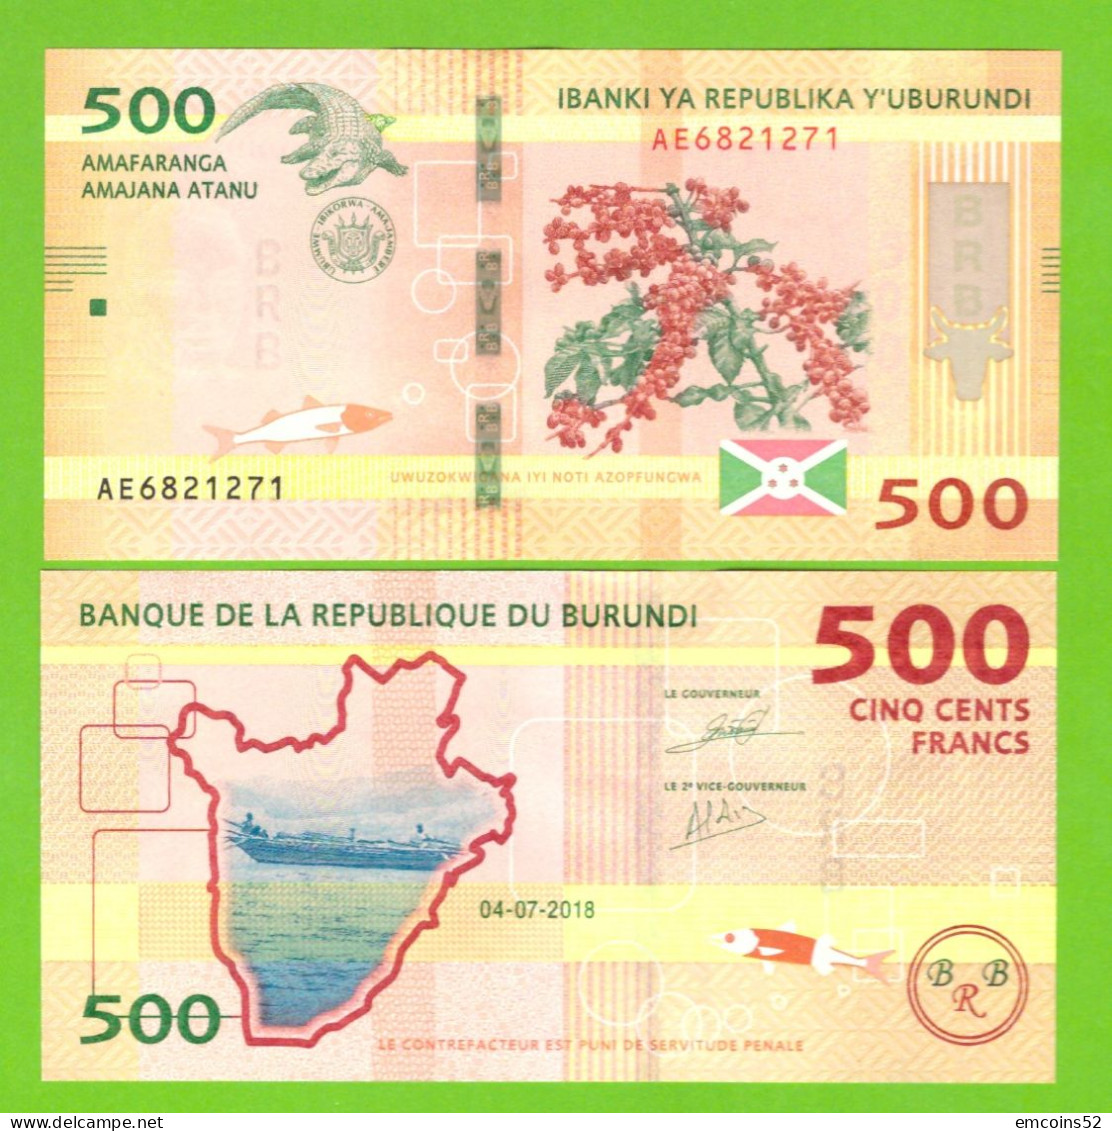 BURUNDI 500 FRANCS 2018  P-50(2)  UNC - Burundi